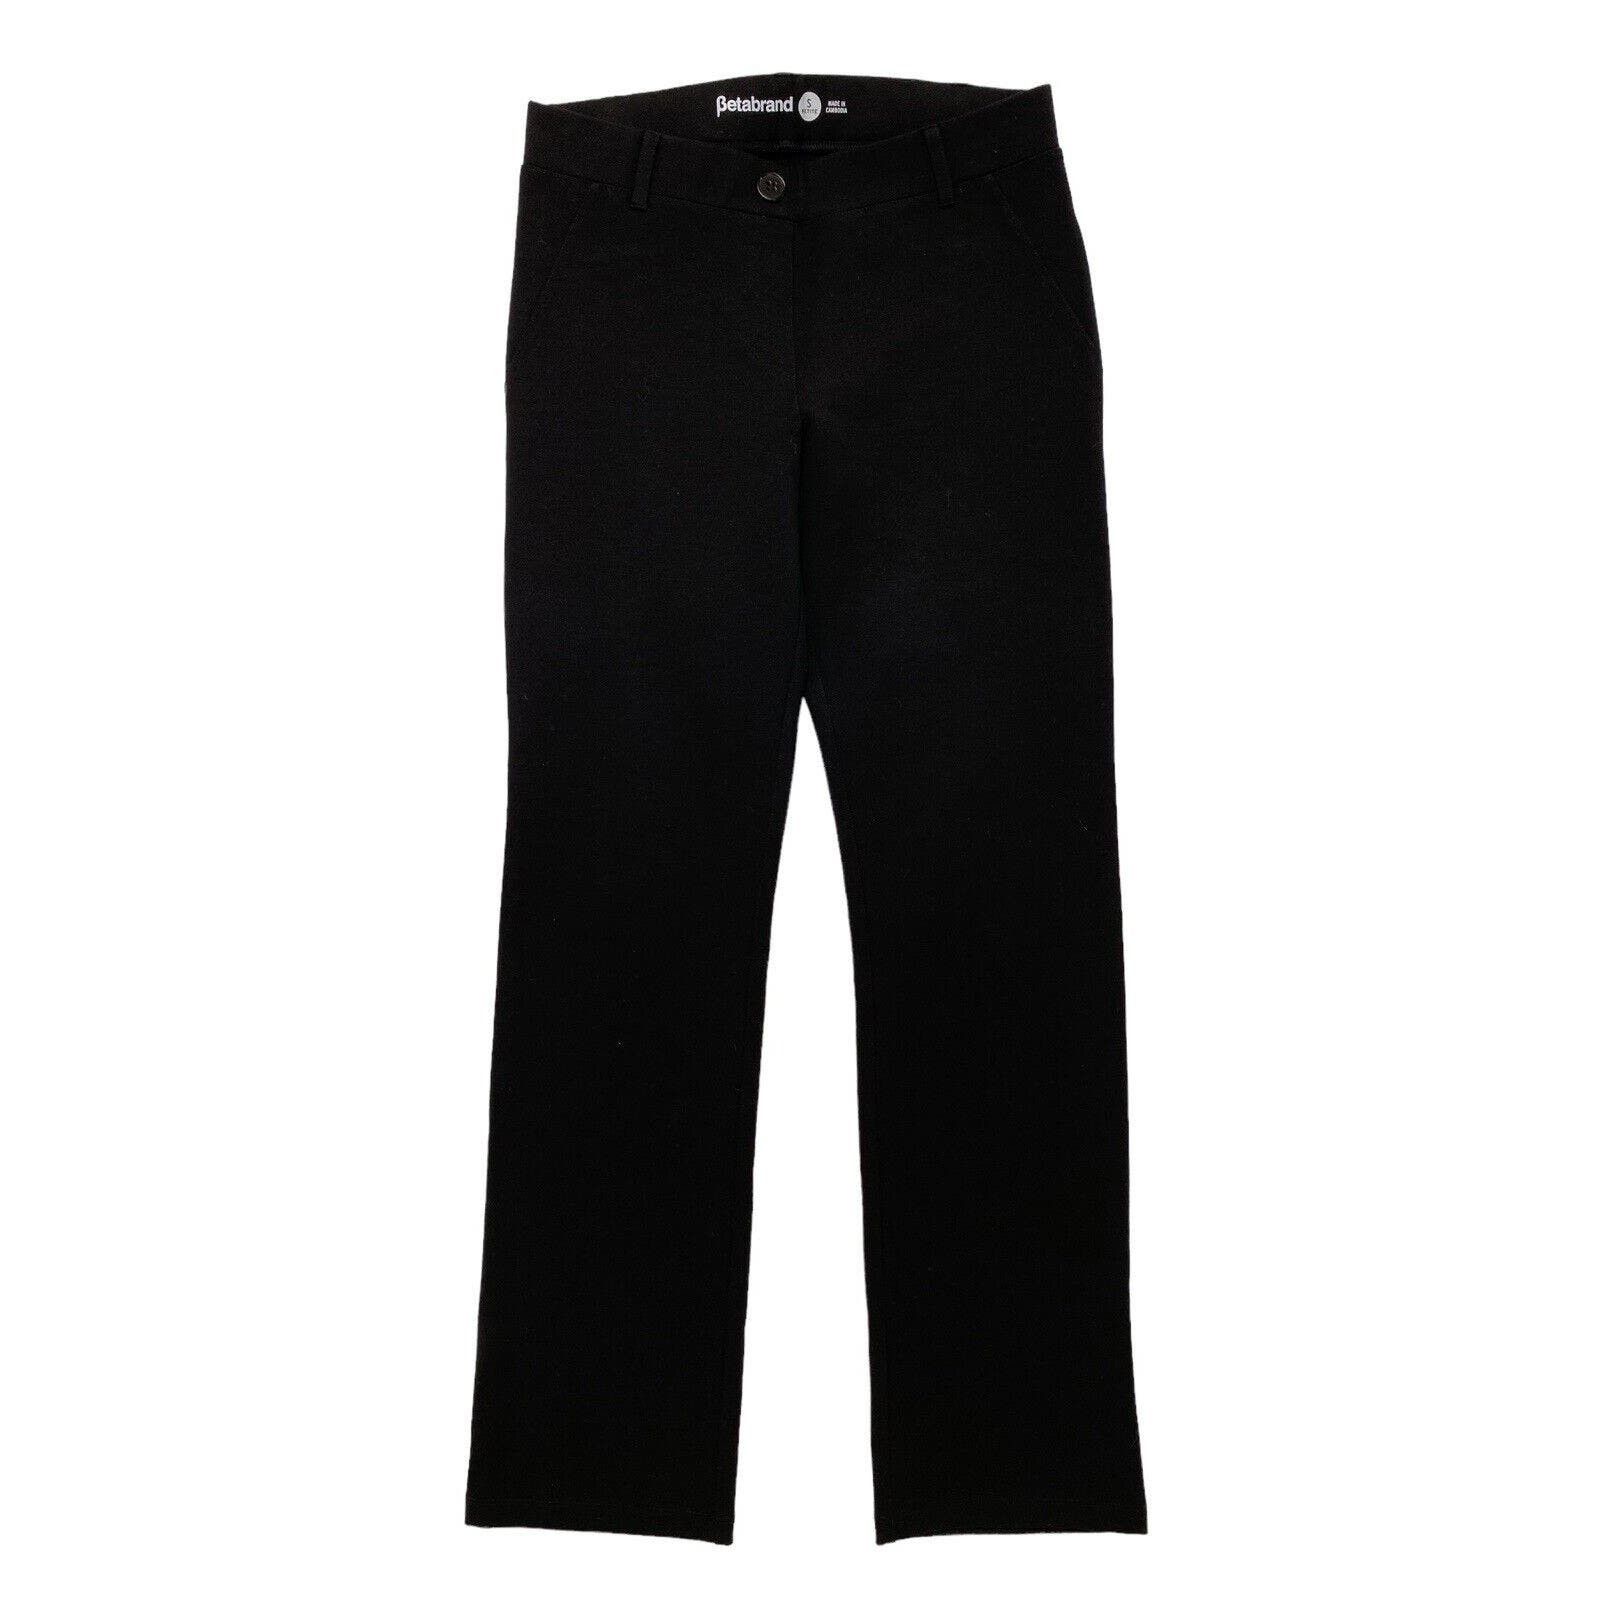 Betabrand Straight-Leg Classic Dress Pant Yoga Pants Size Large Petite LP  Black